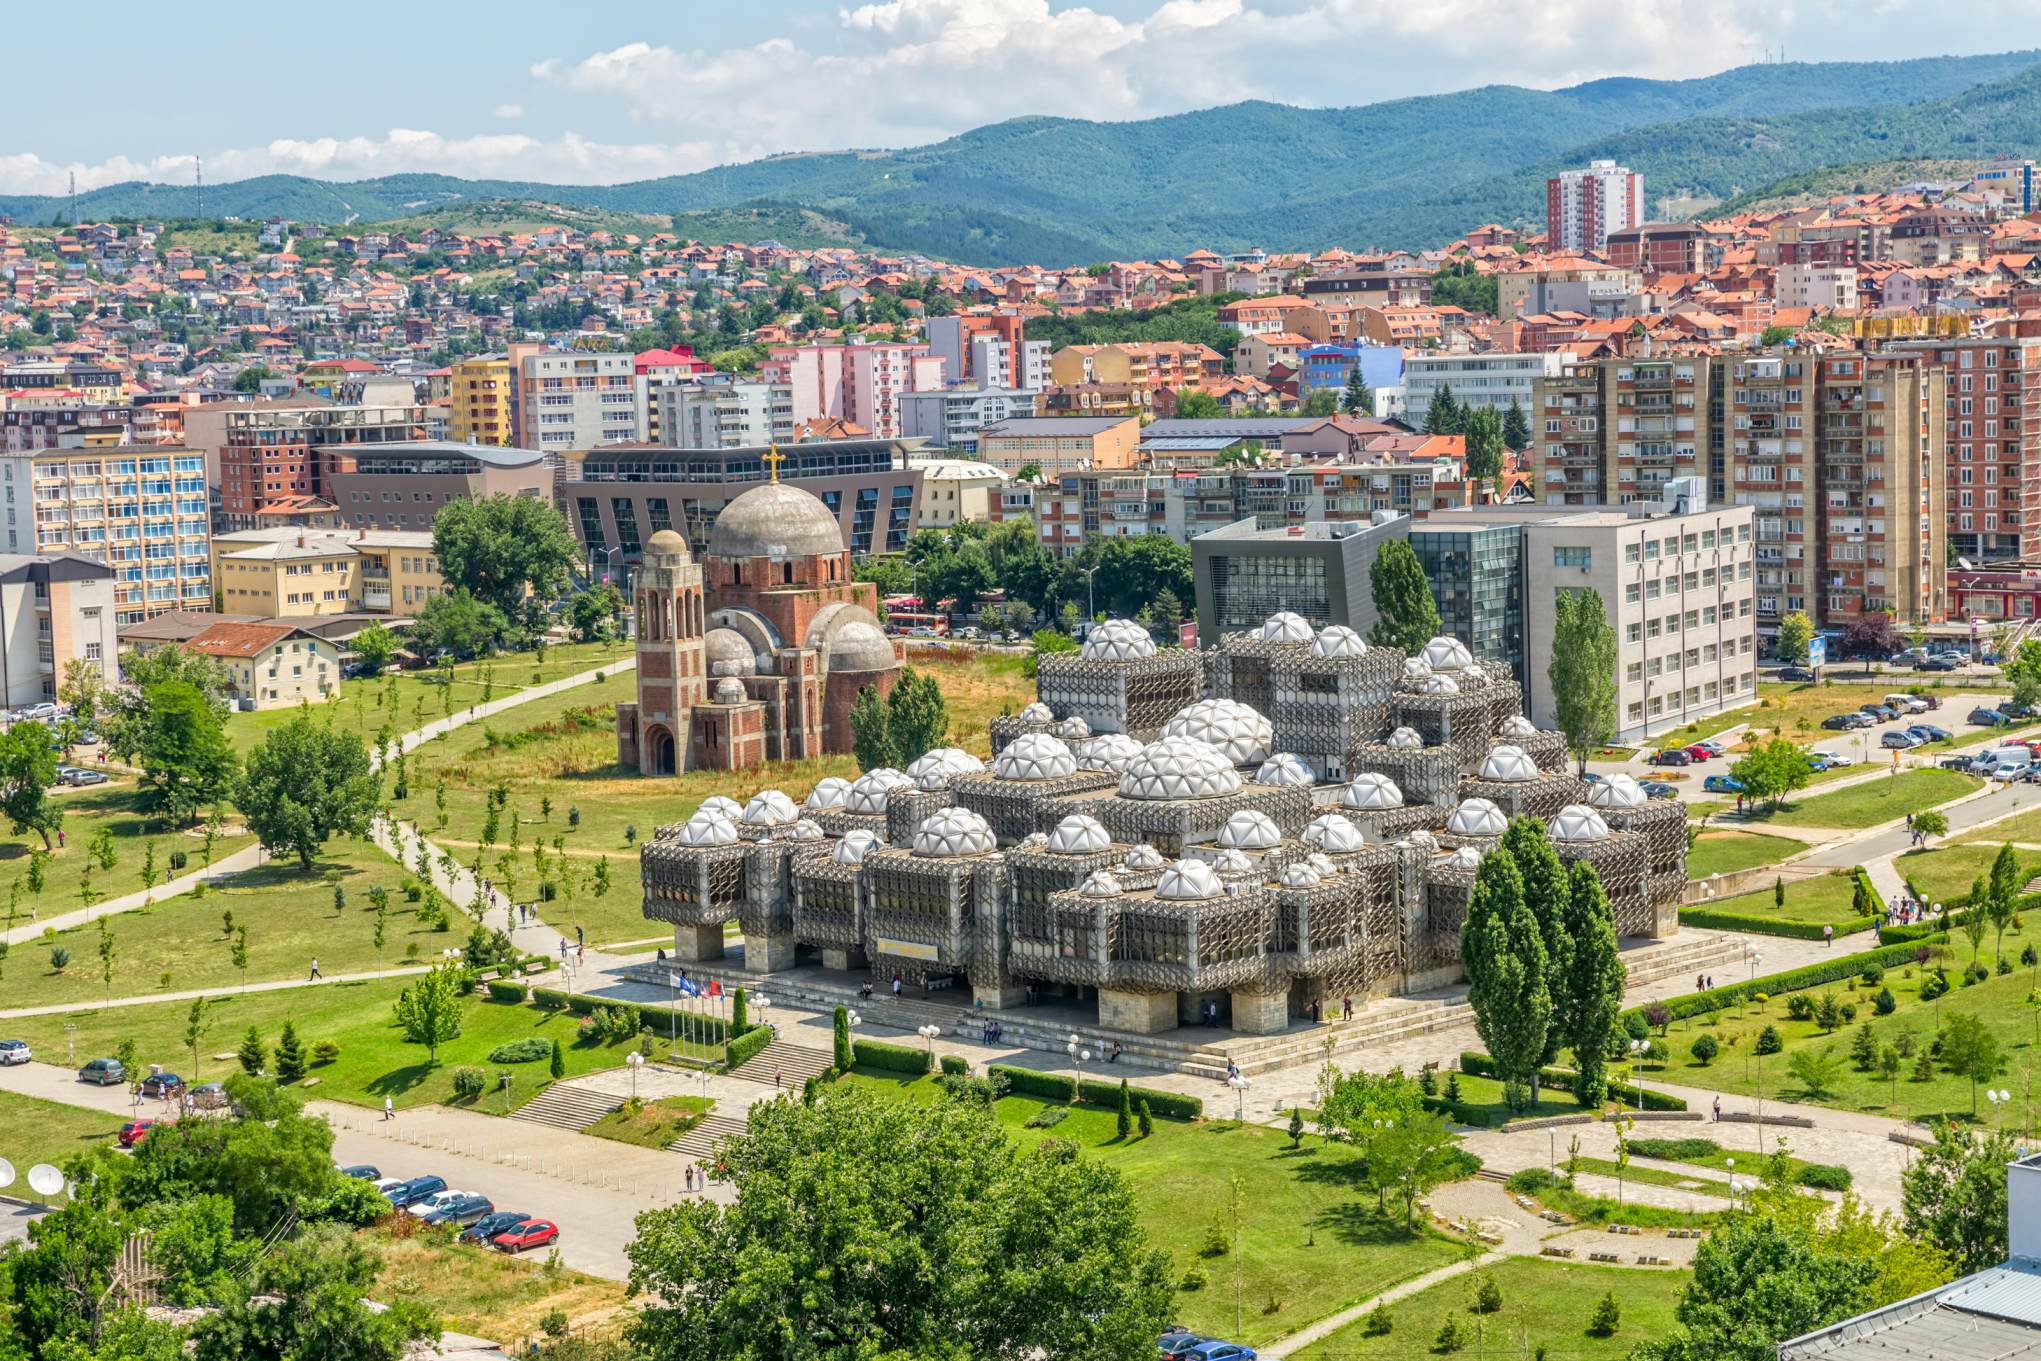 Pristina - Kosovo Capital